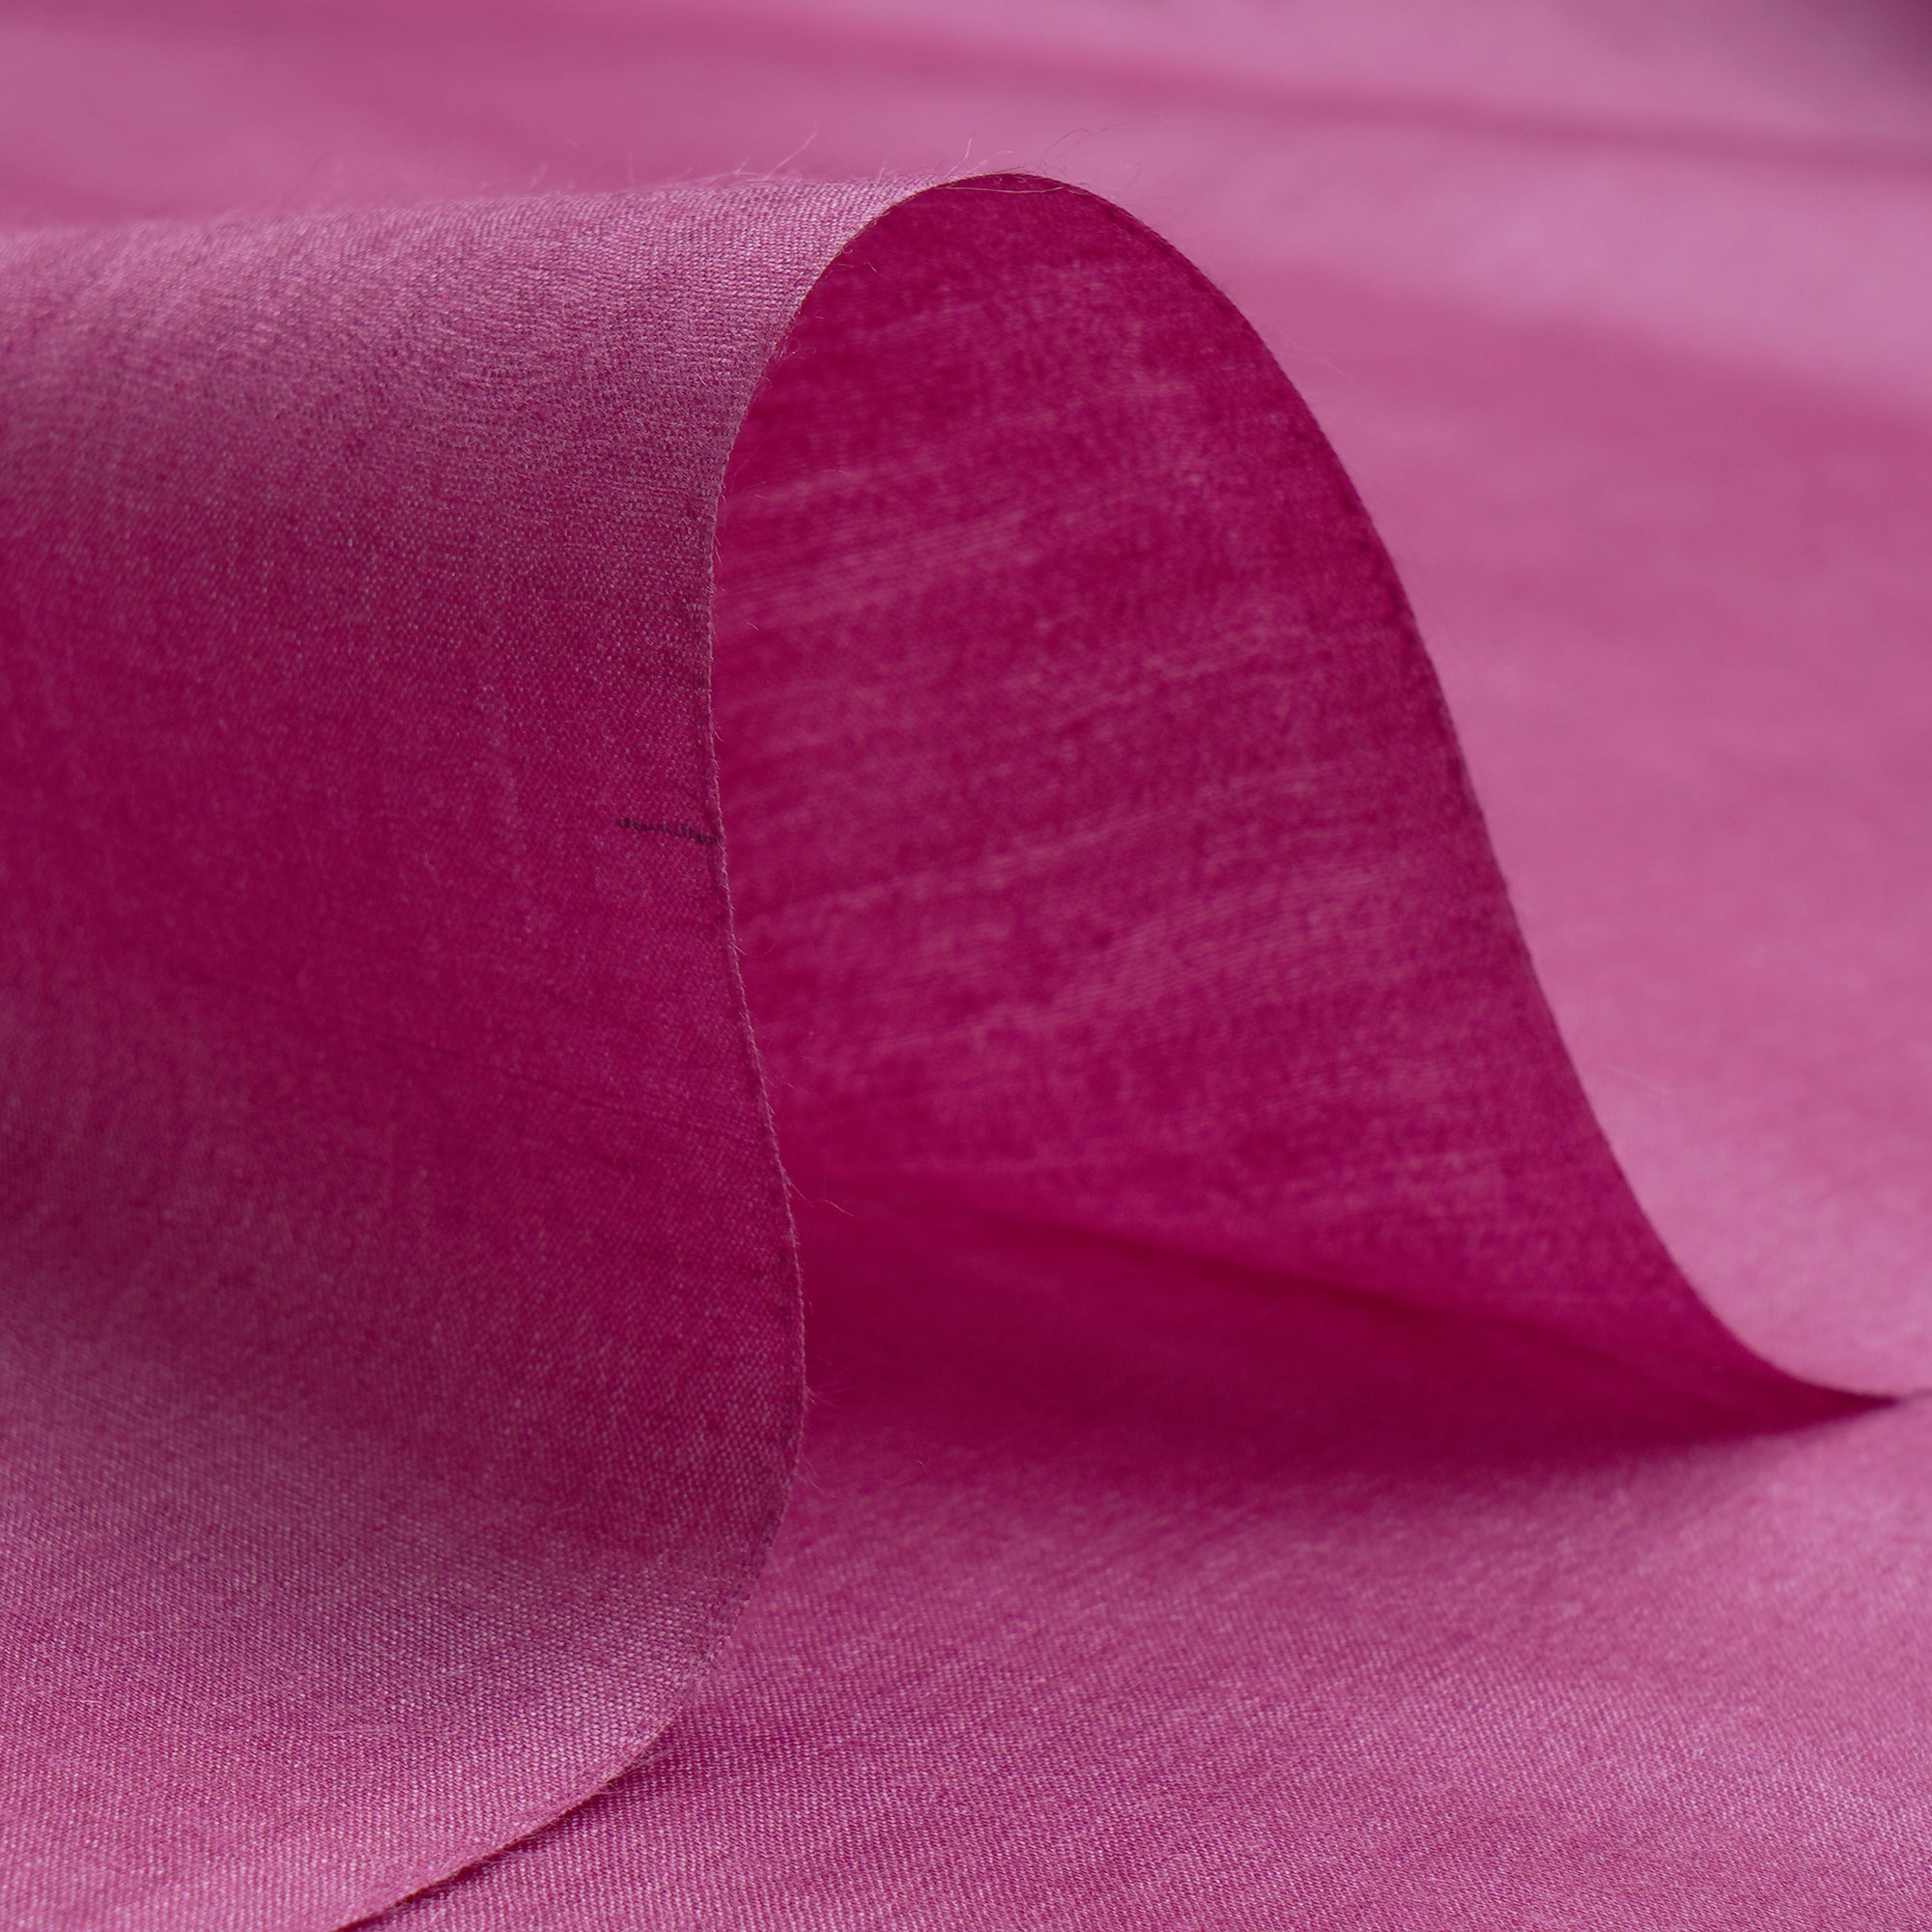 Light Pink Dyed Tusser Muga Silk Fabric